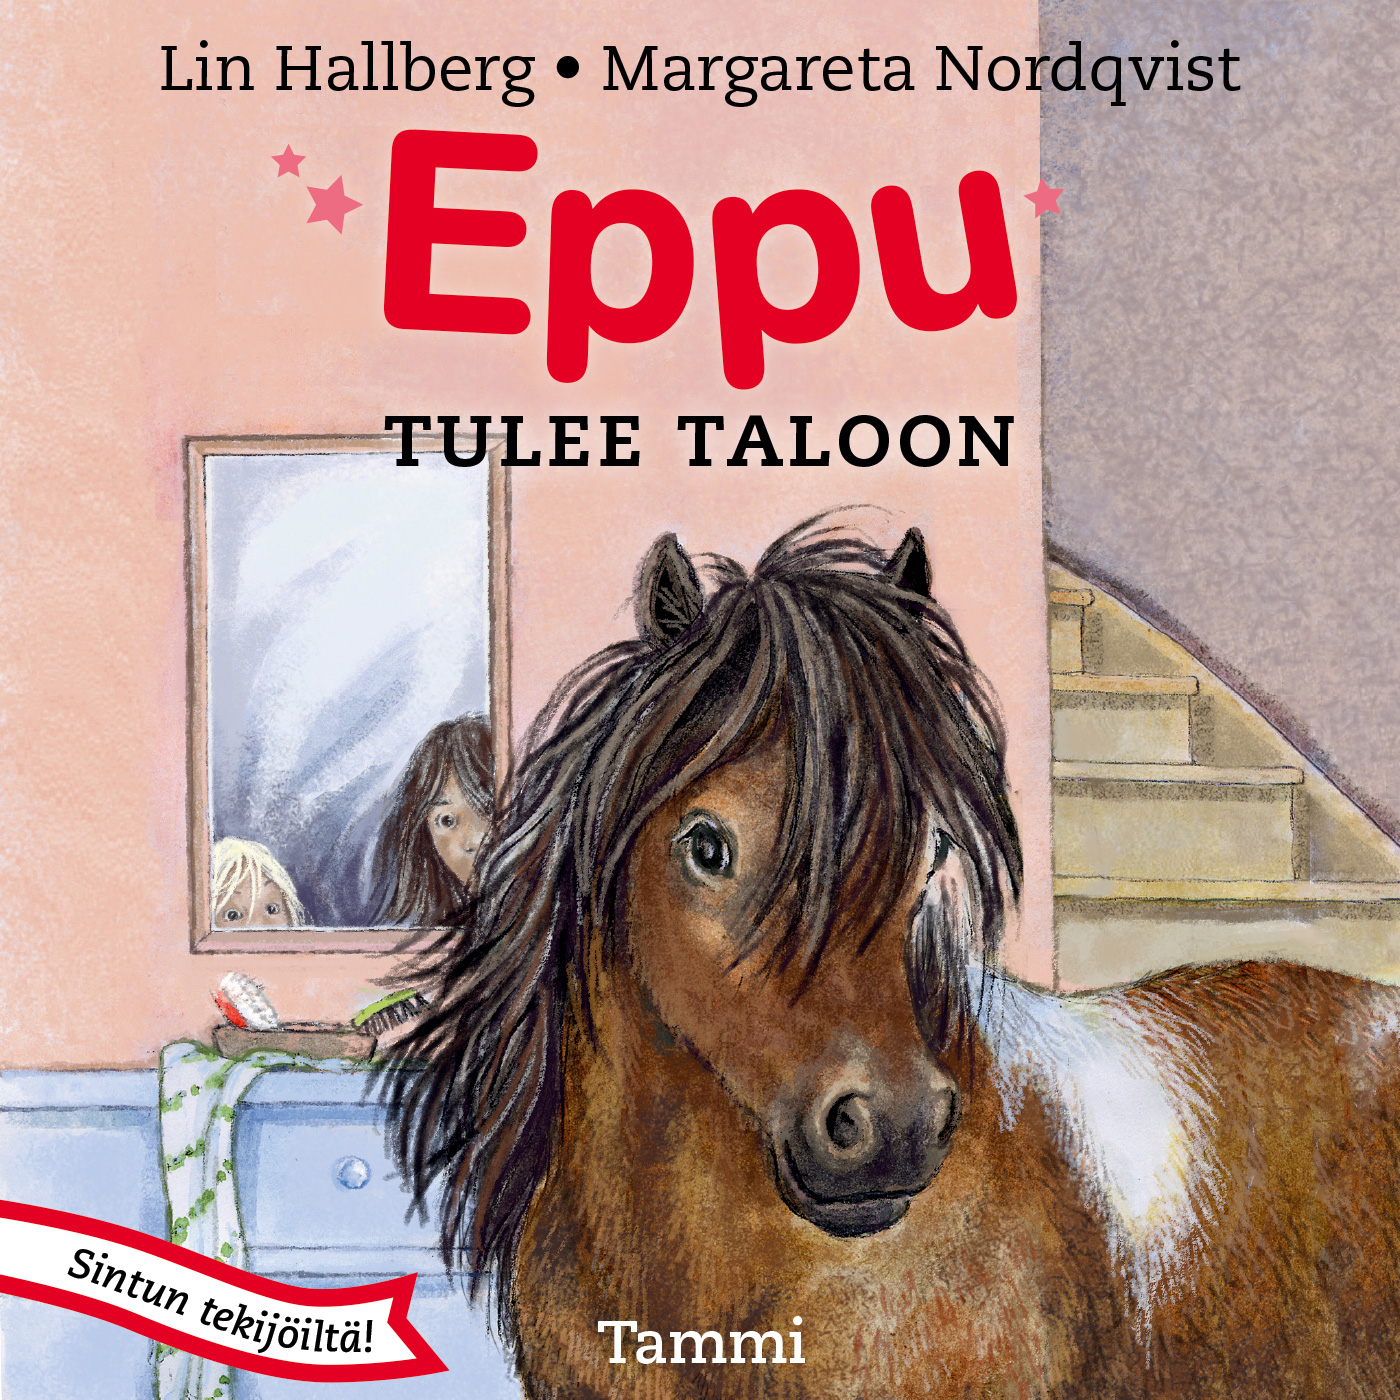 Hallberg, Lin - Eppu tulee taloon, audiobook